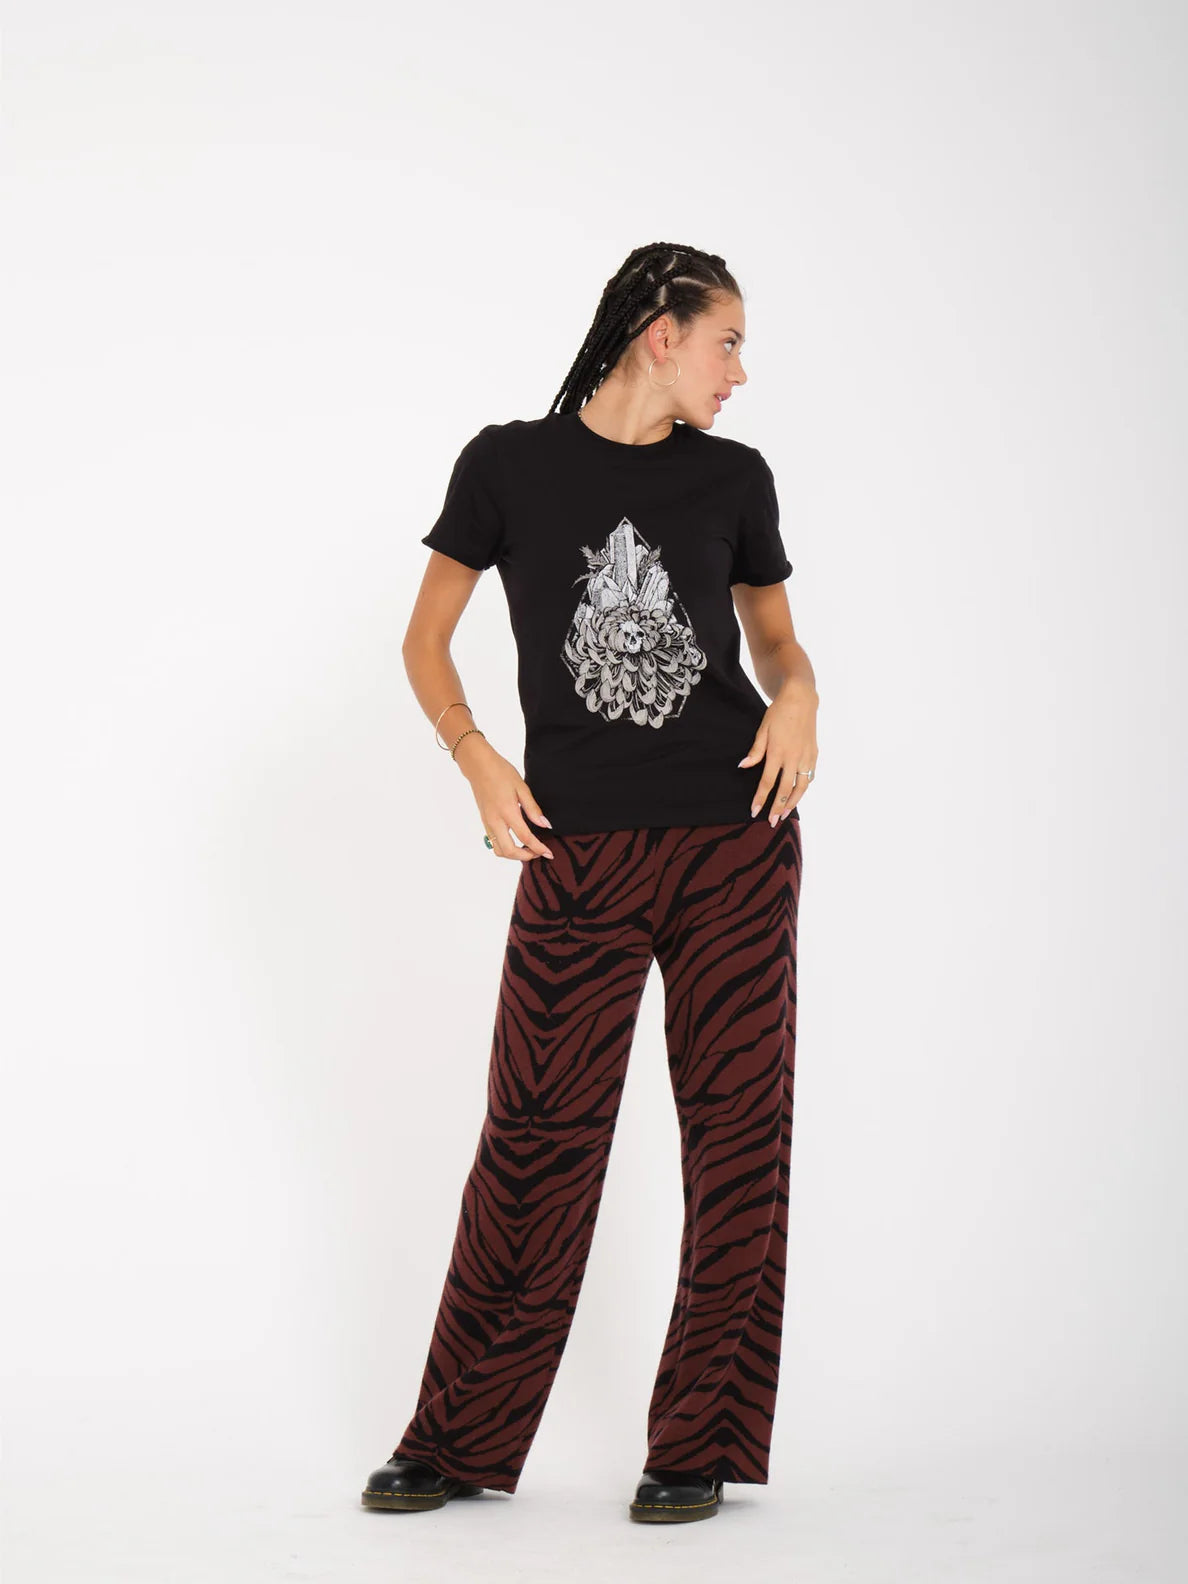 Camiseta Chica Volcom Radical Daze - Black | Camisetas manga corta de mujer | Volcom Shop | surfdevils.com